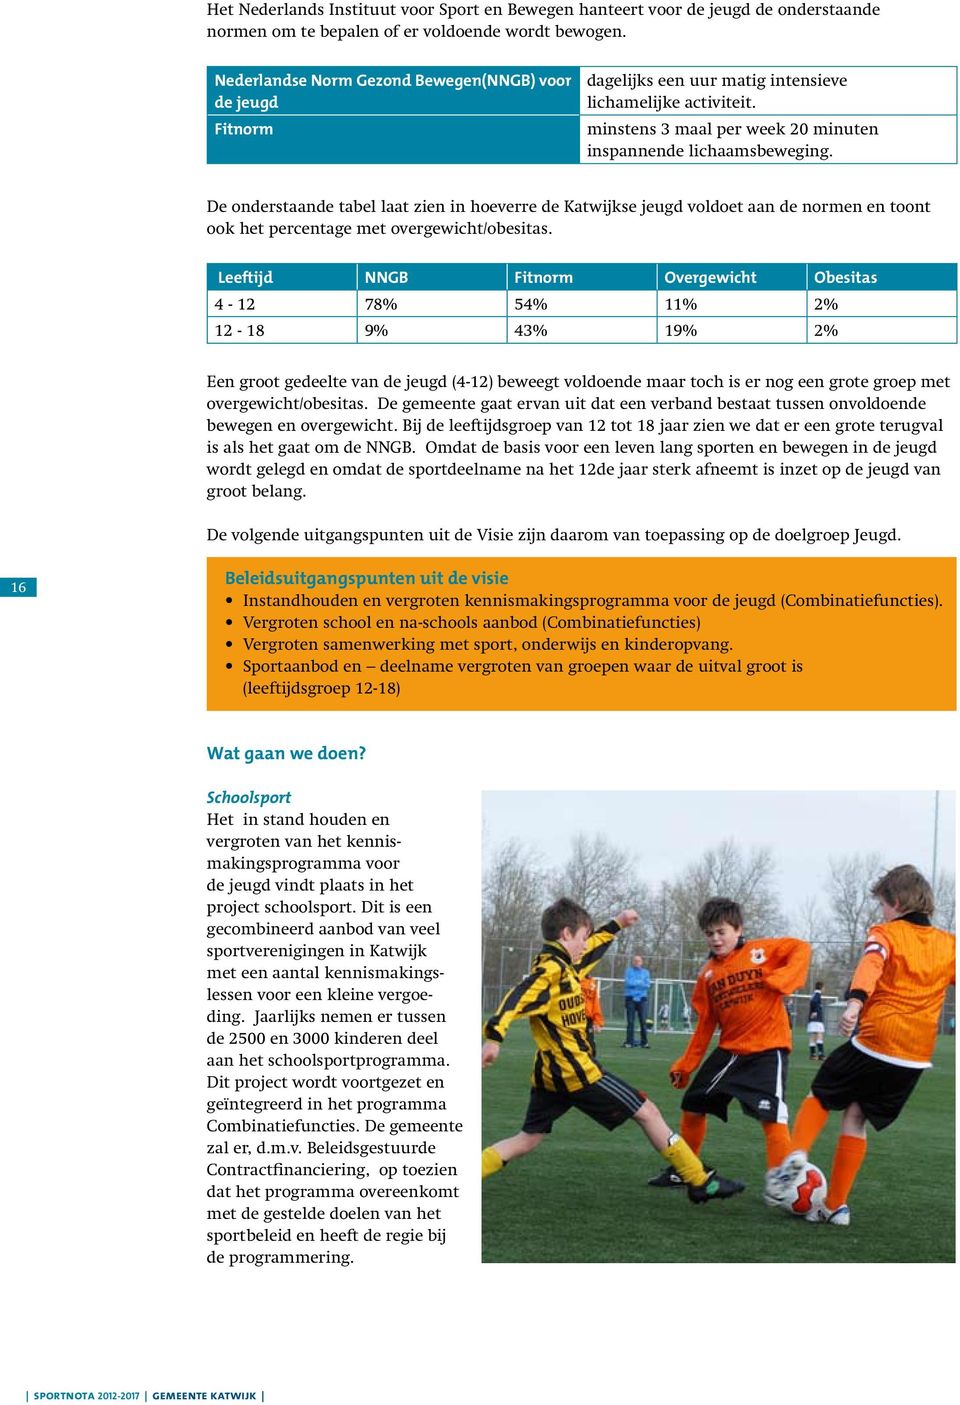 De onderstaande tabel laat zien in hoeverre de Katwijkse jeugd voldoet aan de normen en toont ook het percentage met overgewicht/obesitas.